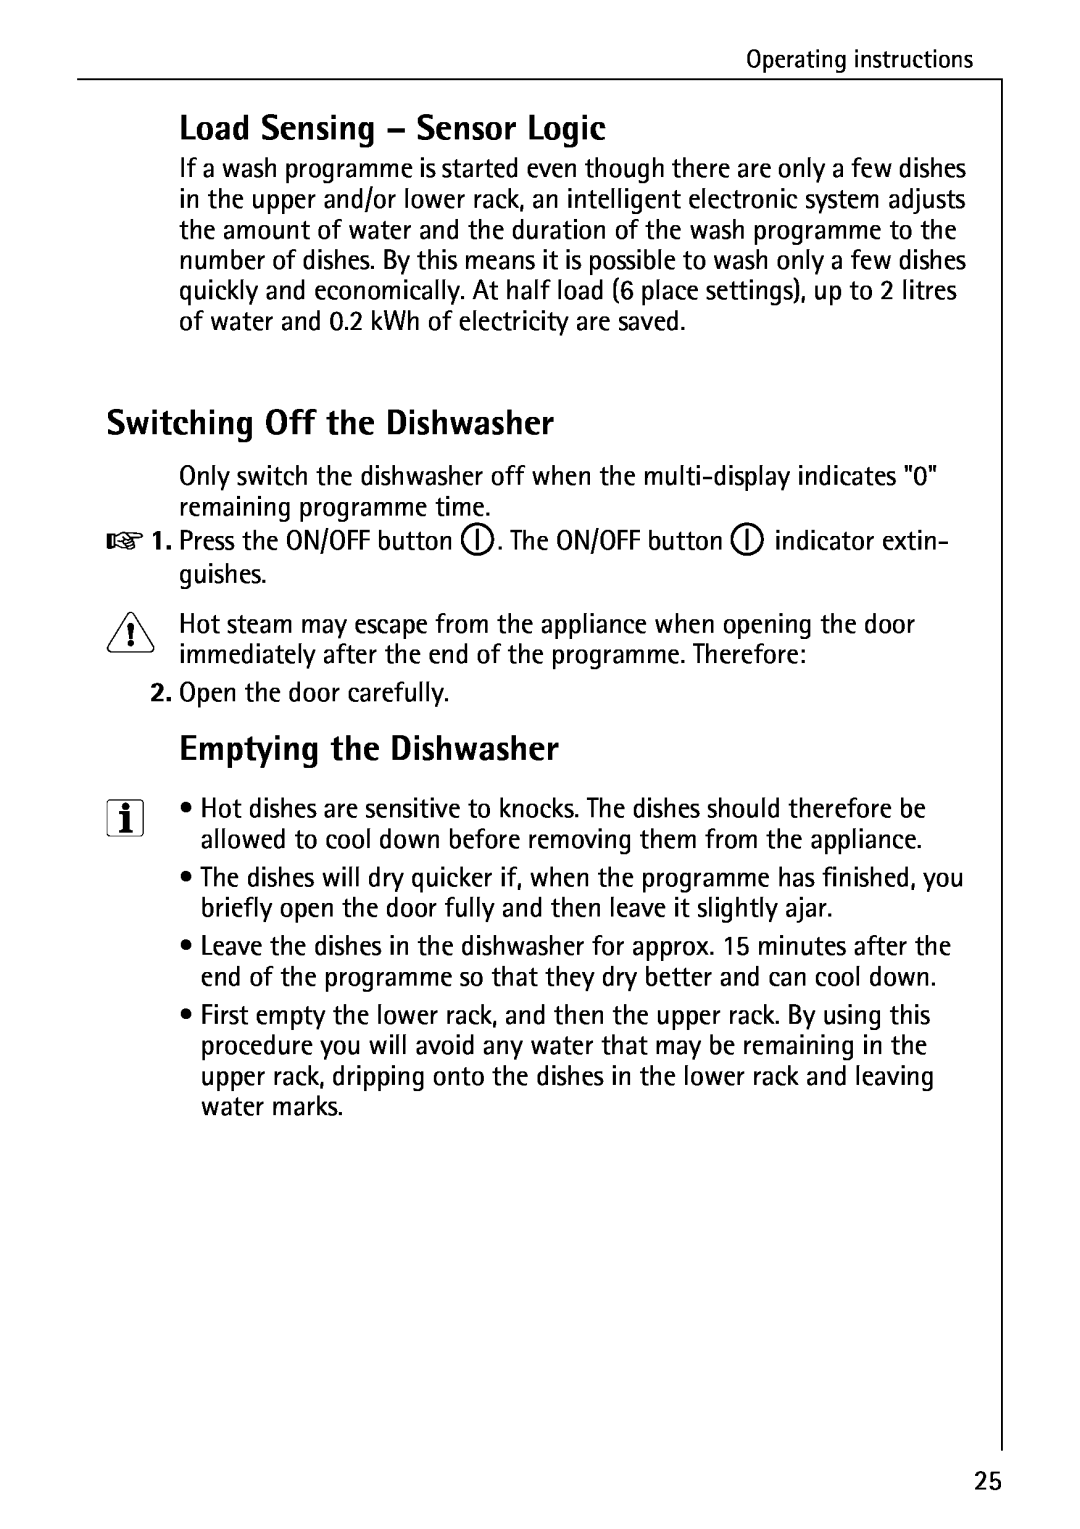 AEG 6281 I Load Sensing - Sensor Logic, Switching Off the Dishwasher, Emptying the Dishwasher, Open the door carefully 